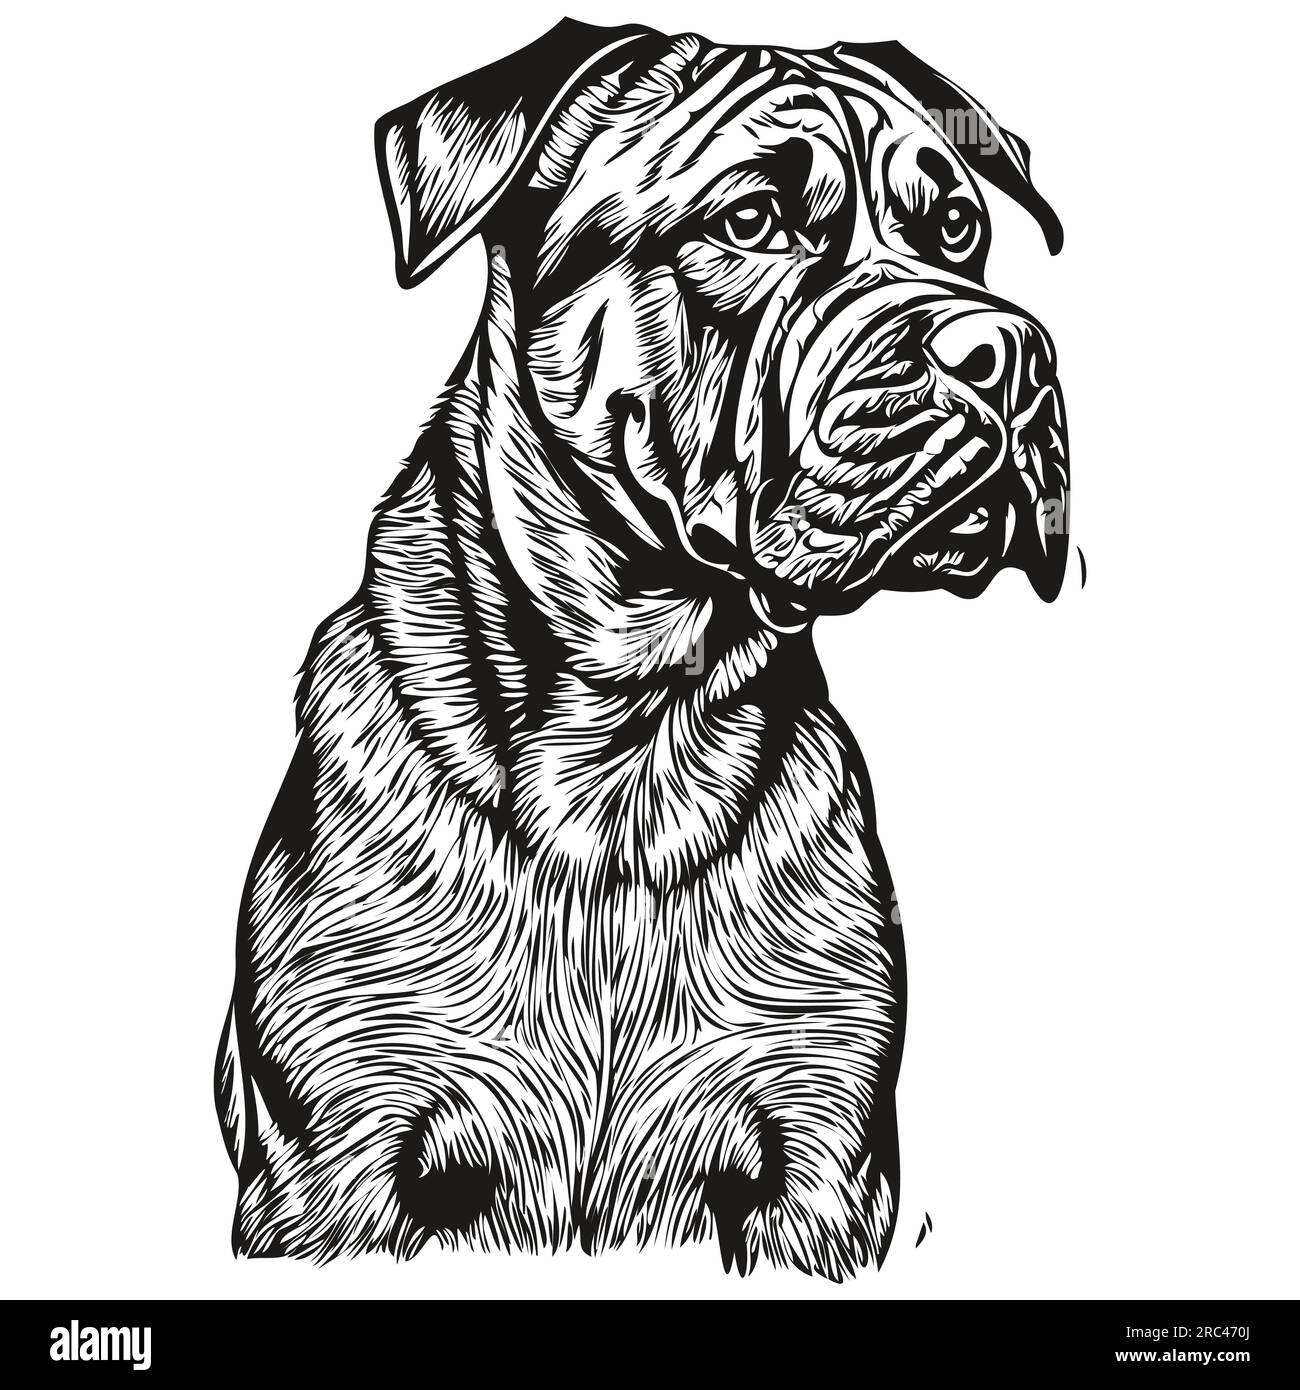 Silhouette d'animal de compagnie de chien Bullmastiff, illustration de ligne d'animal dessiné à la main en noir et blanc vecteur réaliste animal de compagnie Illustration de Vecteur